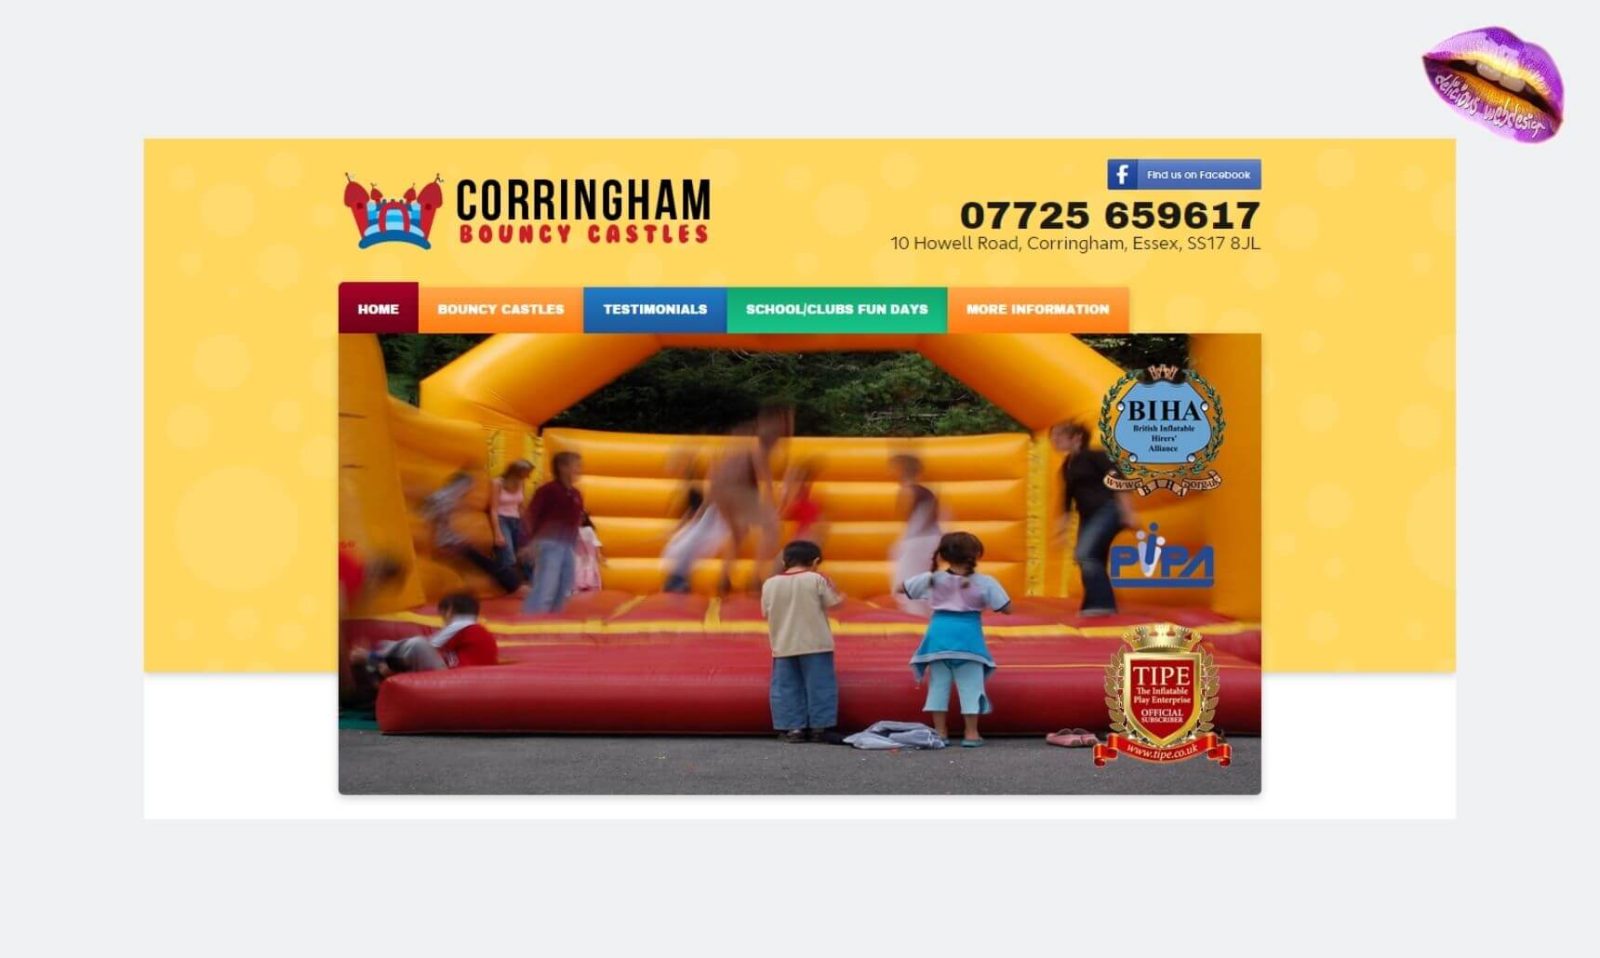 Corringham Bouncy Castles